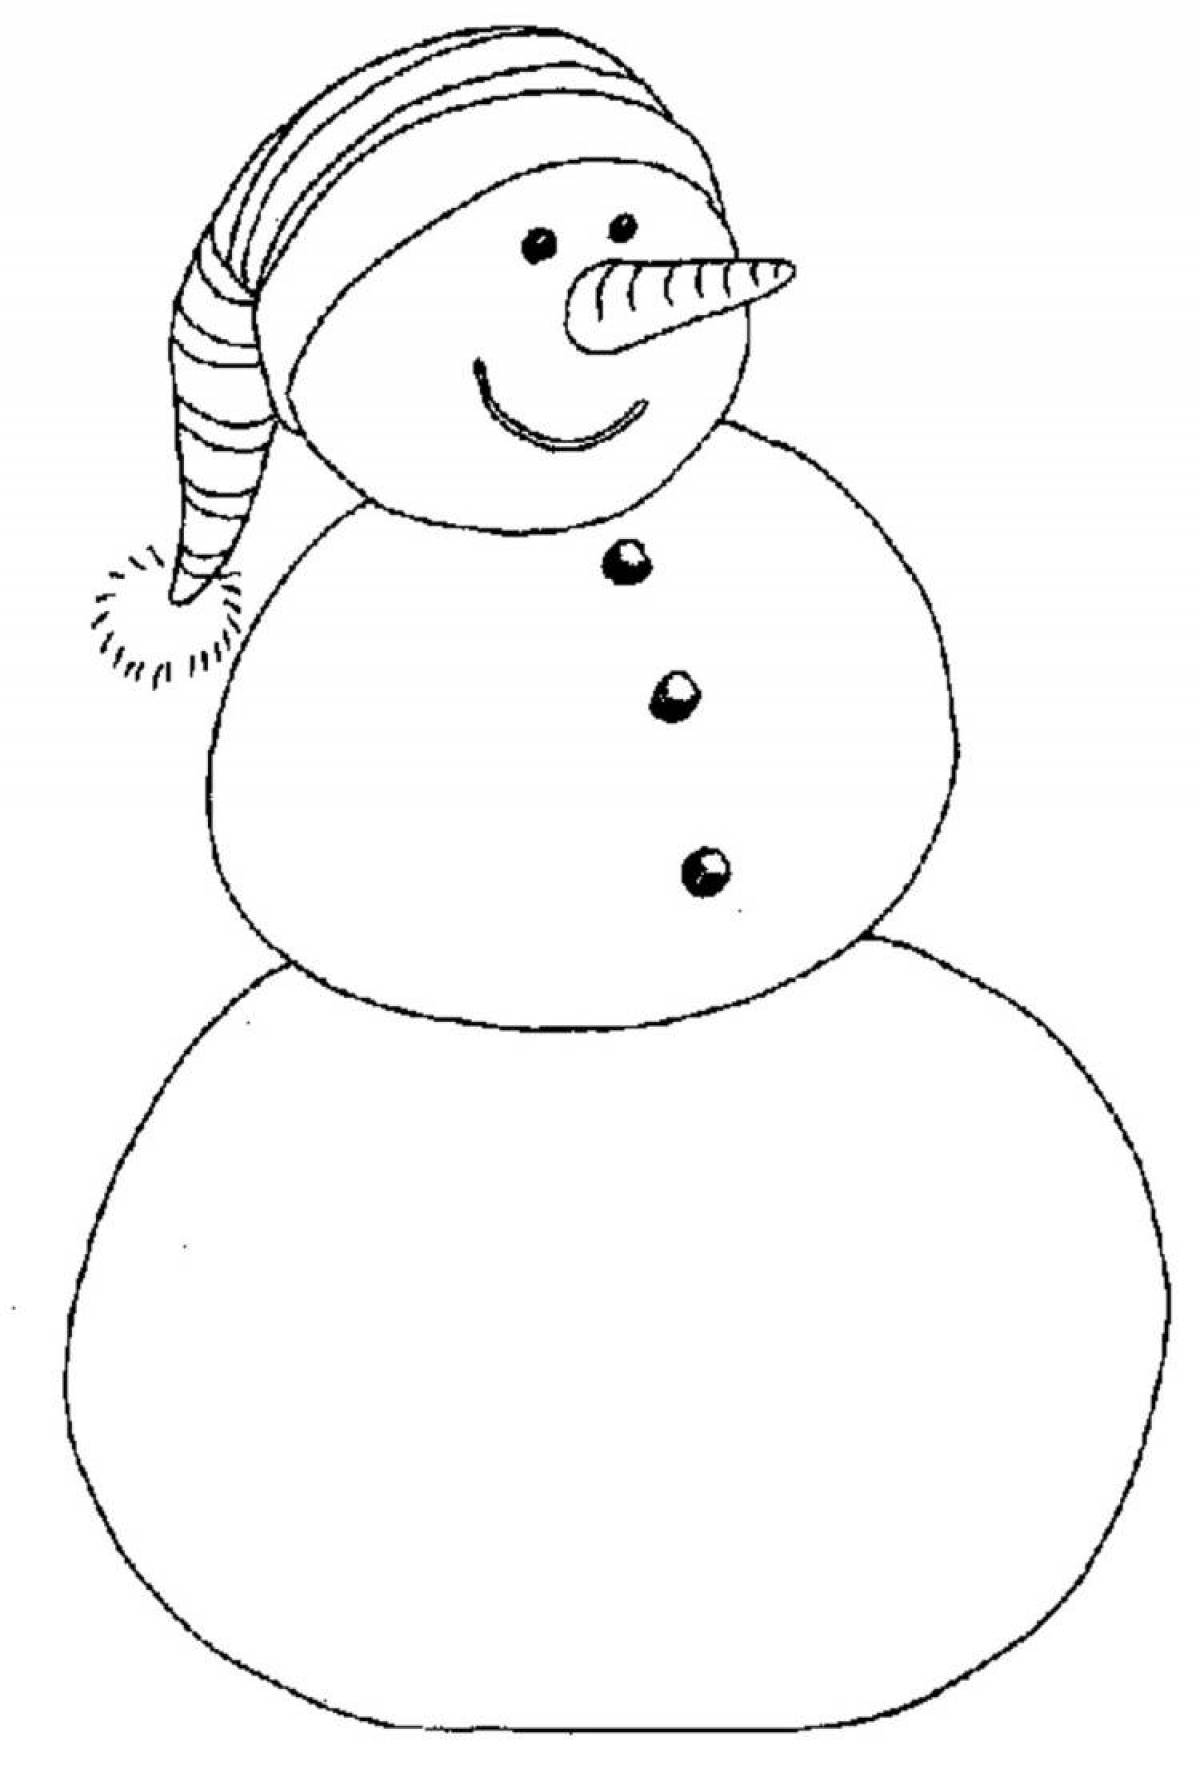 Радостный снеговик раскраски для детей